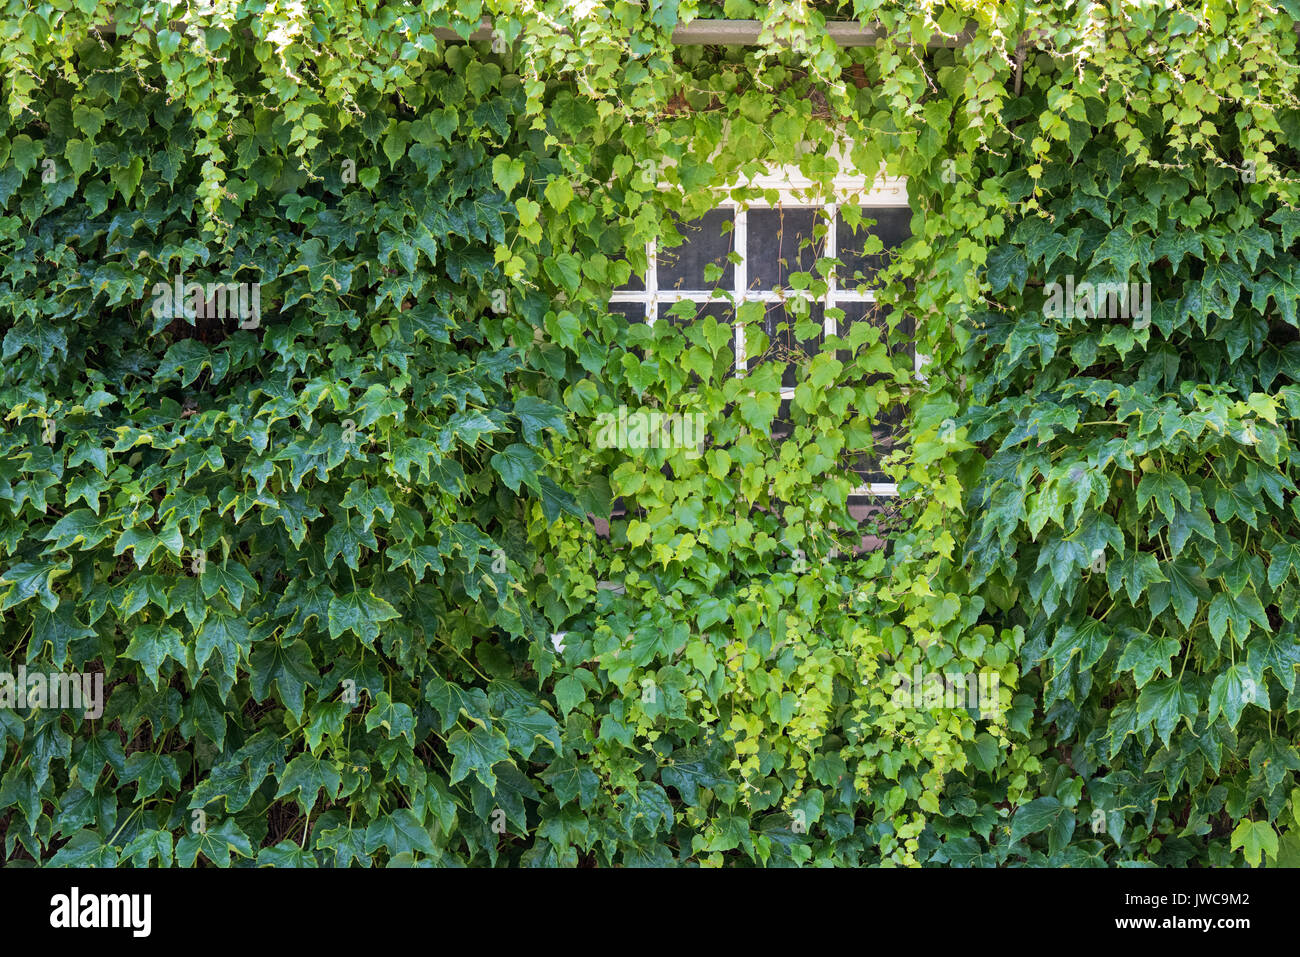 Du Parthenocissus tricuspidata. Boston ivy couvrant un mur et fenêtre d'une maison. Goring-on-Thames, Oxfordshire, Angleterre Banque D'Images